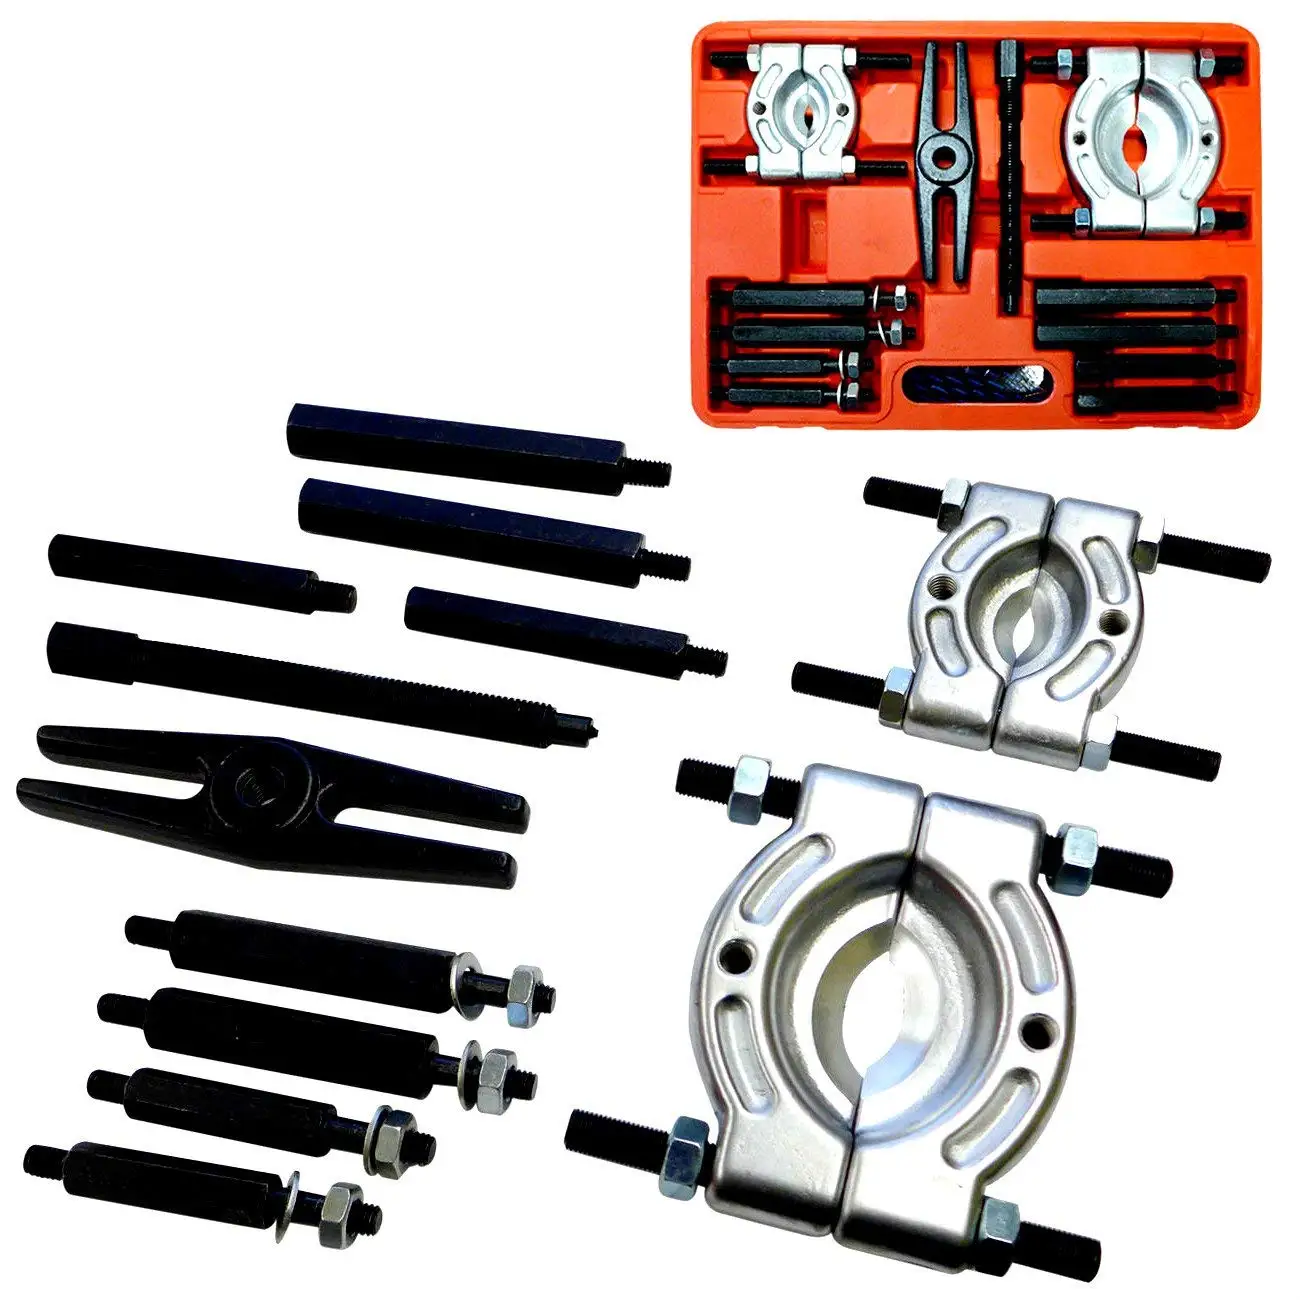 5-ton bar-type puller/bearing separator set